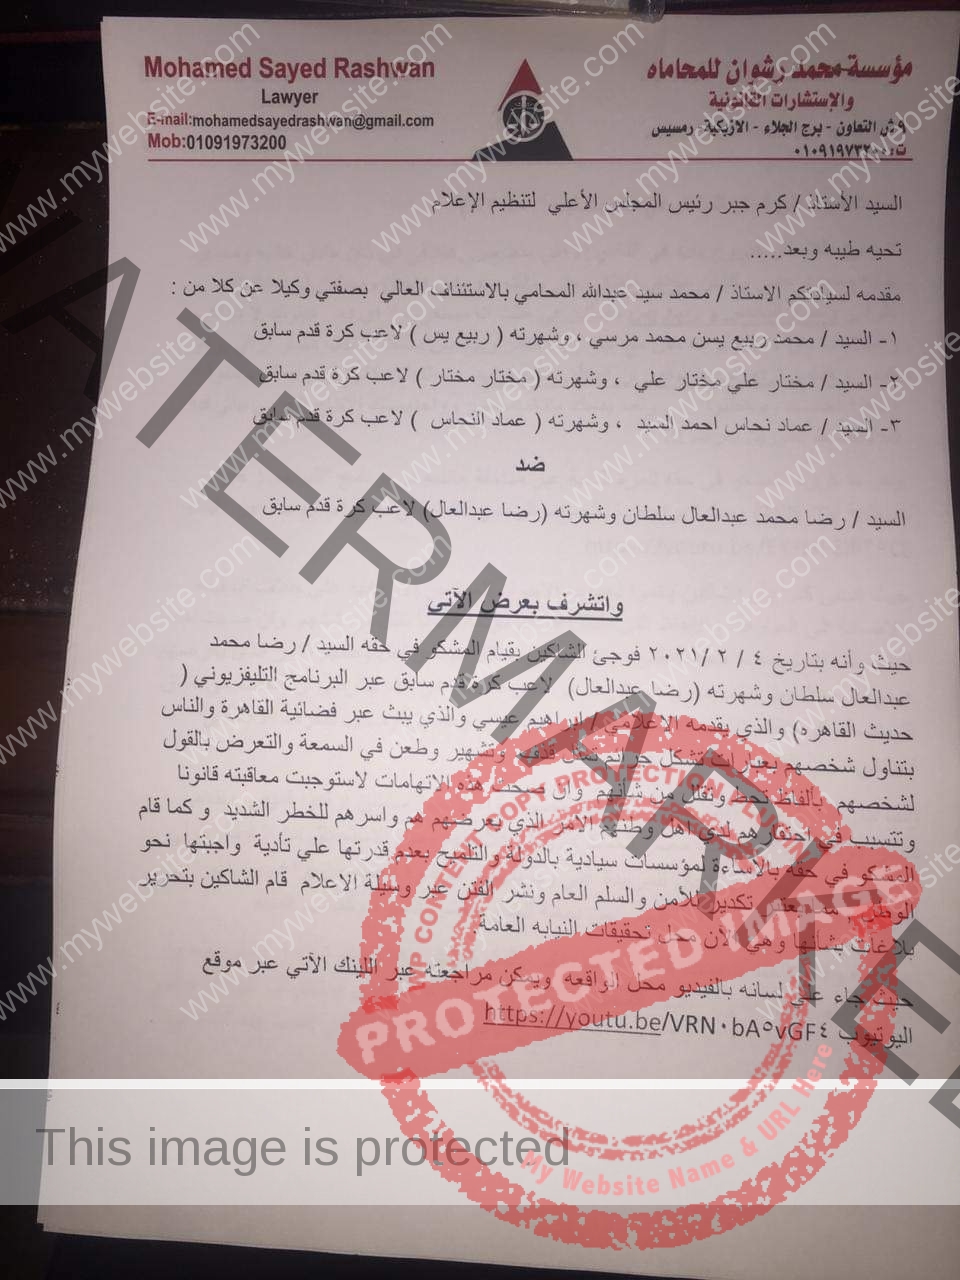 ربيع ياسين ومختار والنحاس يتقدمون بشكوى رسمية ضد رضا عبد العال